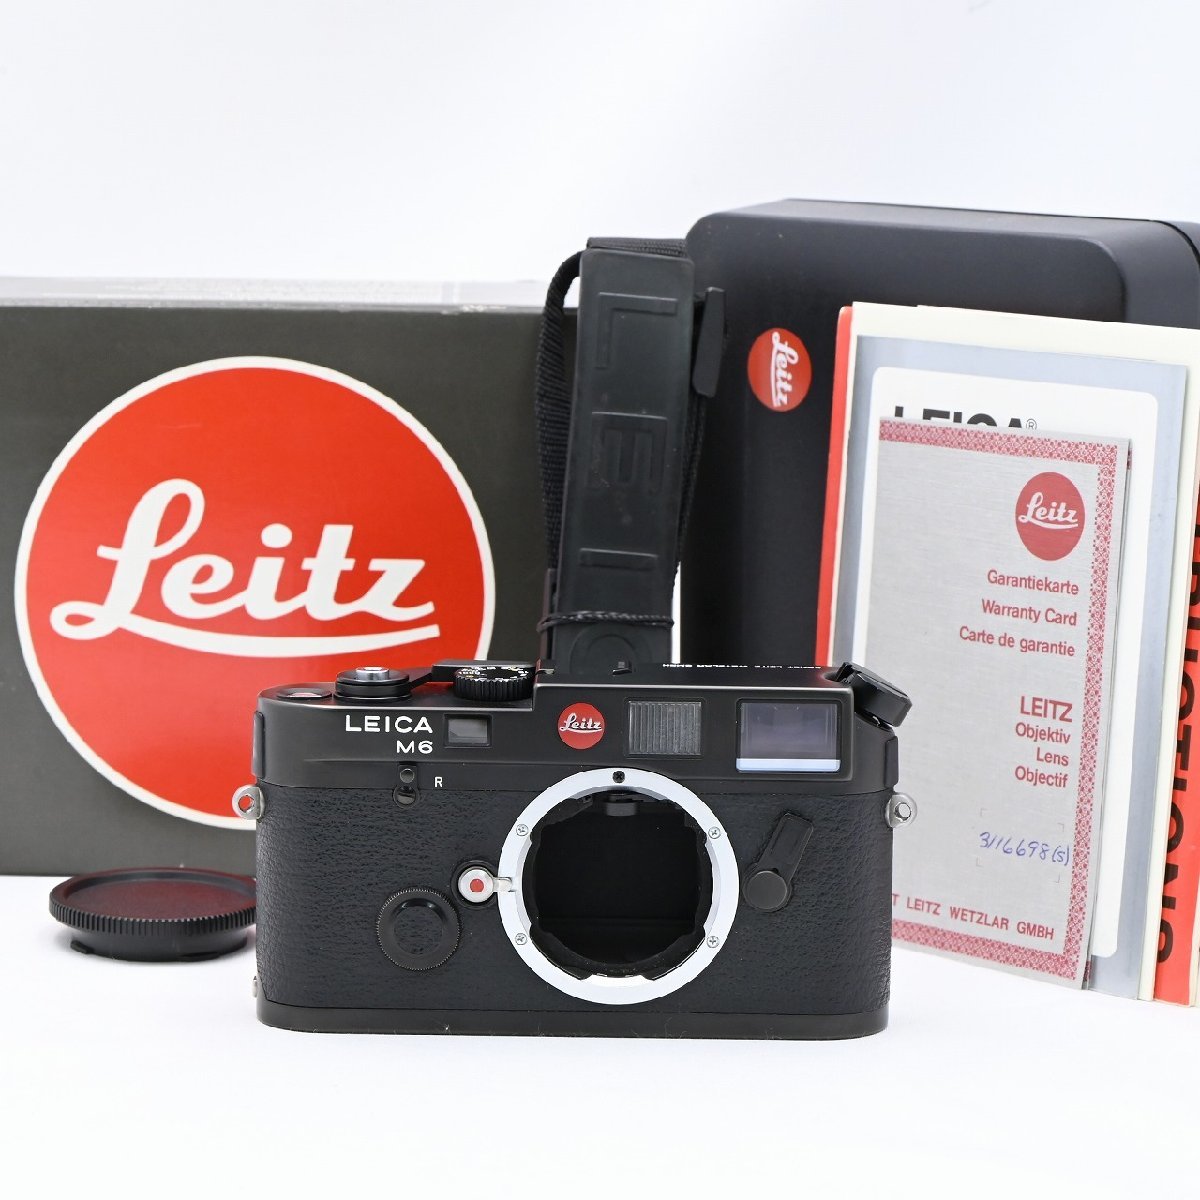 ライカ Leica M6 ボディ ブラック LEITZ WETZLAR GMBH